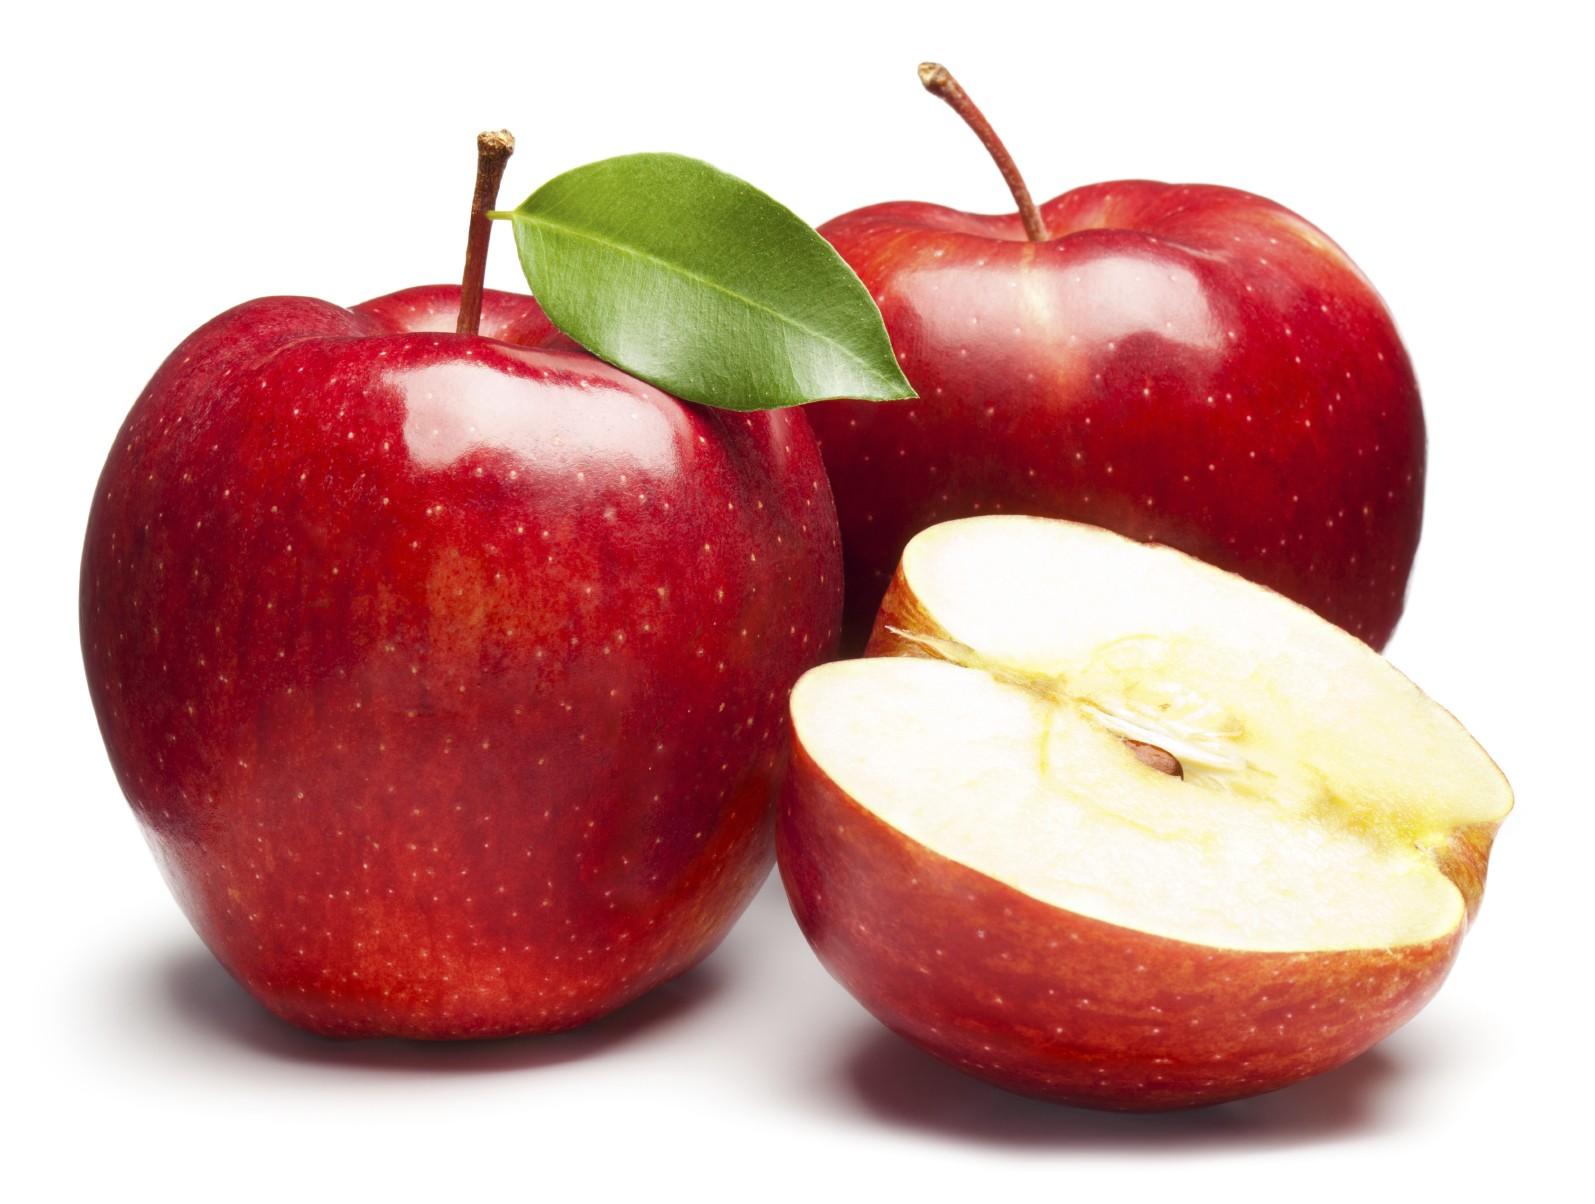 खाली पेट सेब खाने से आप सेहतमंद तो बन सकते हैं लेकिन इस समस्या का भी हो सकता खतरा